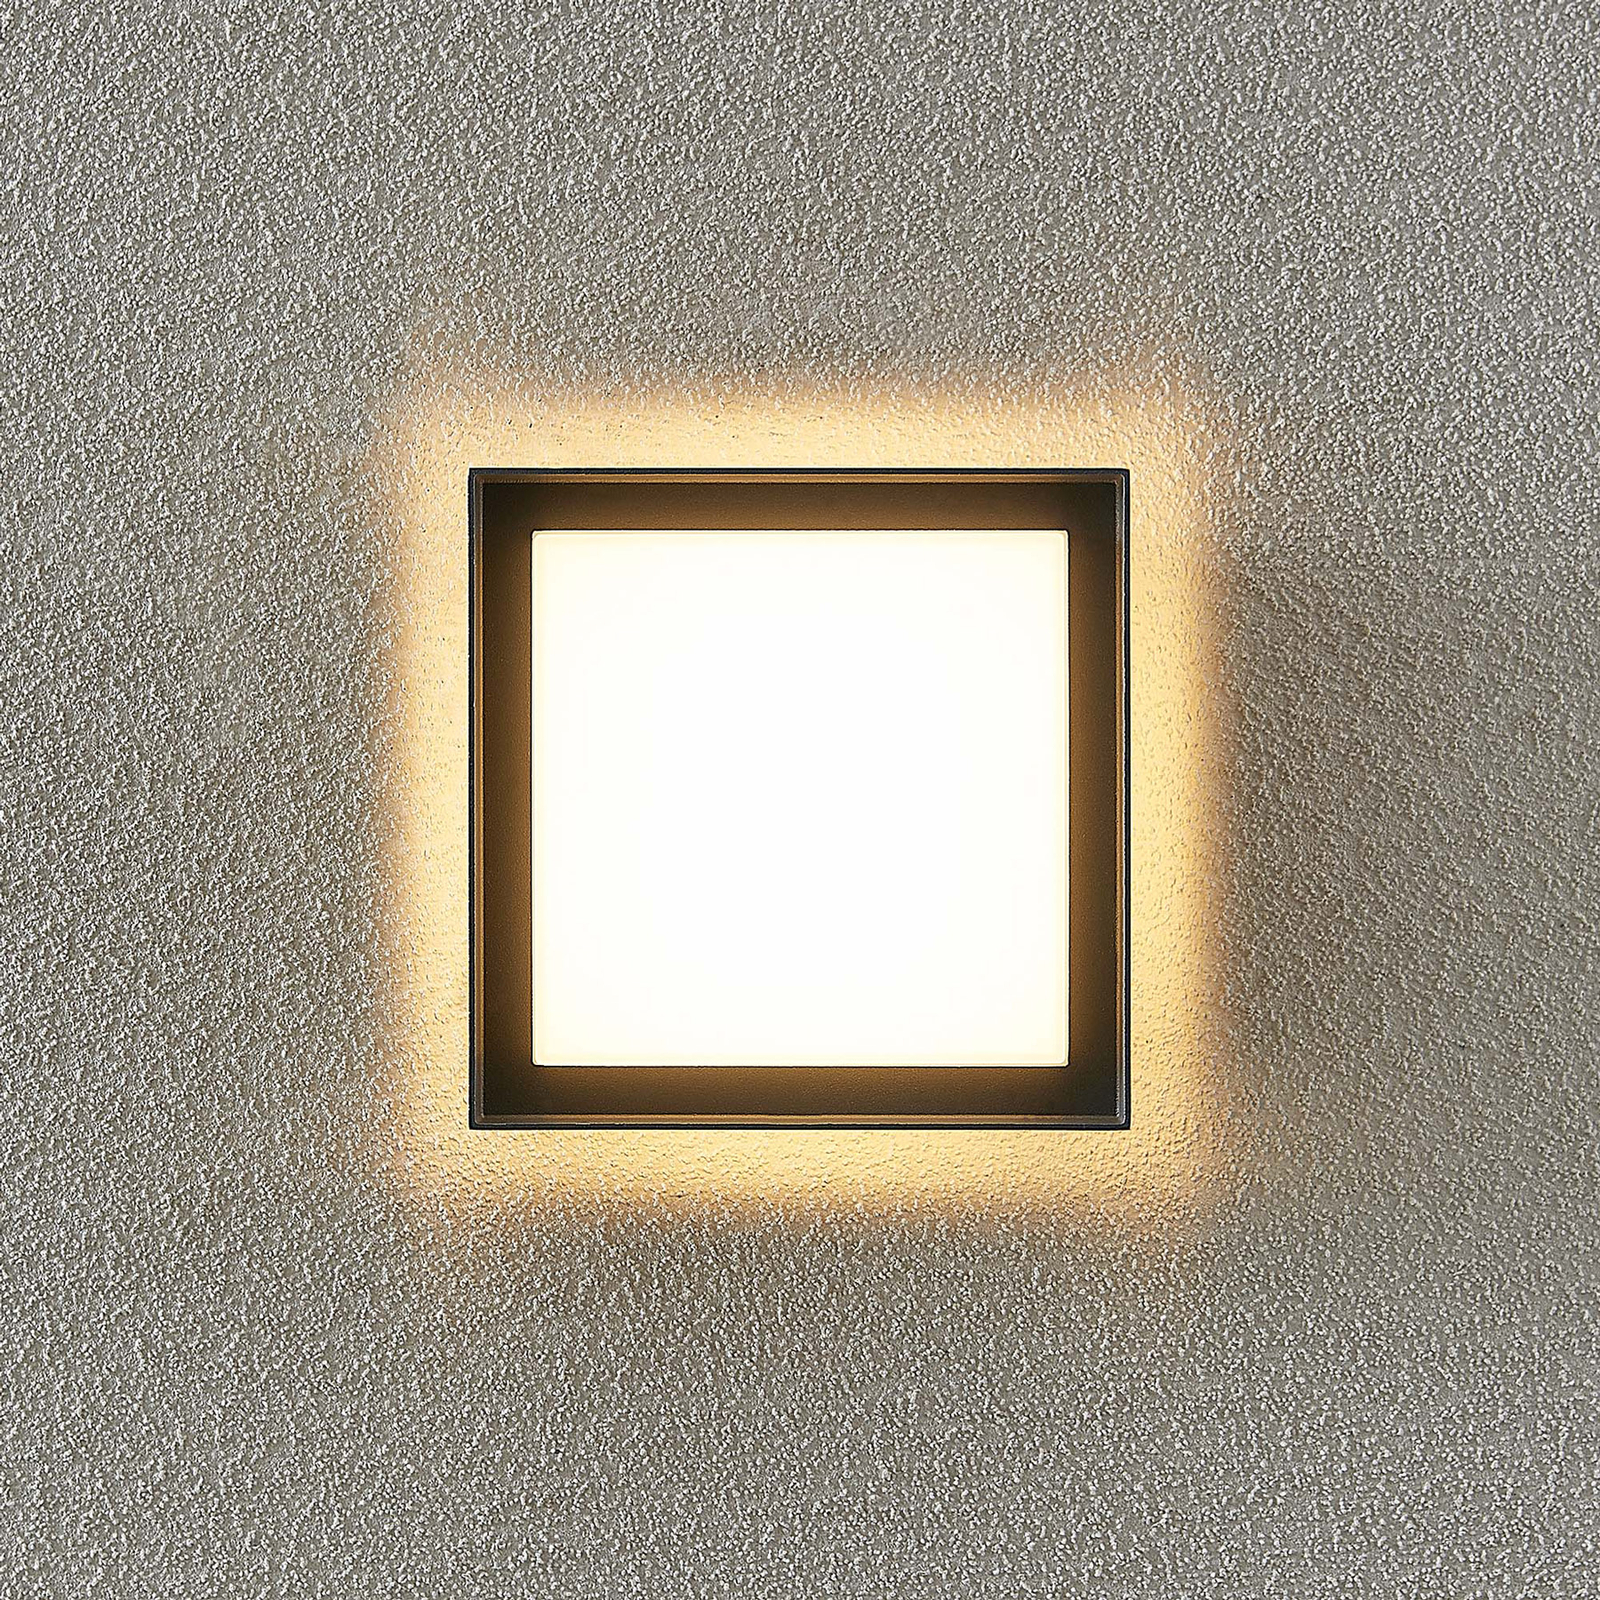 Venkovní nástěnné svítidlo Prios Epava LED, čtvercové